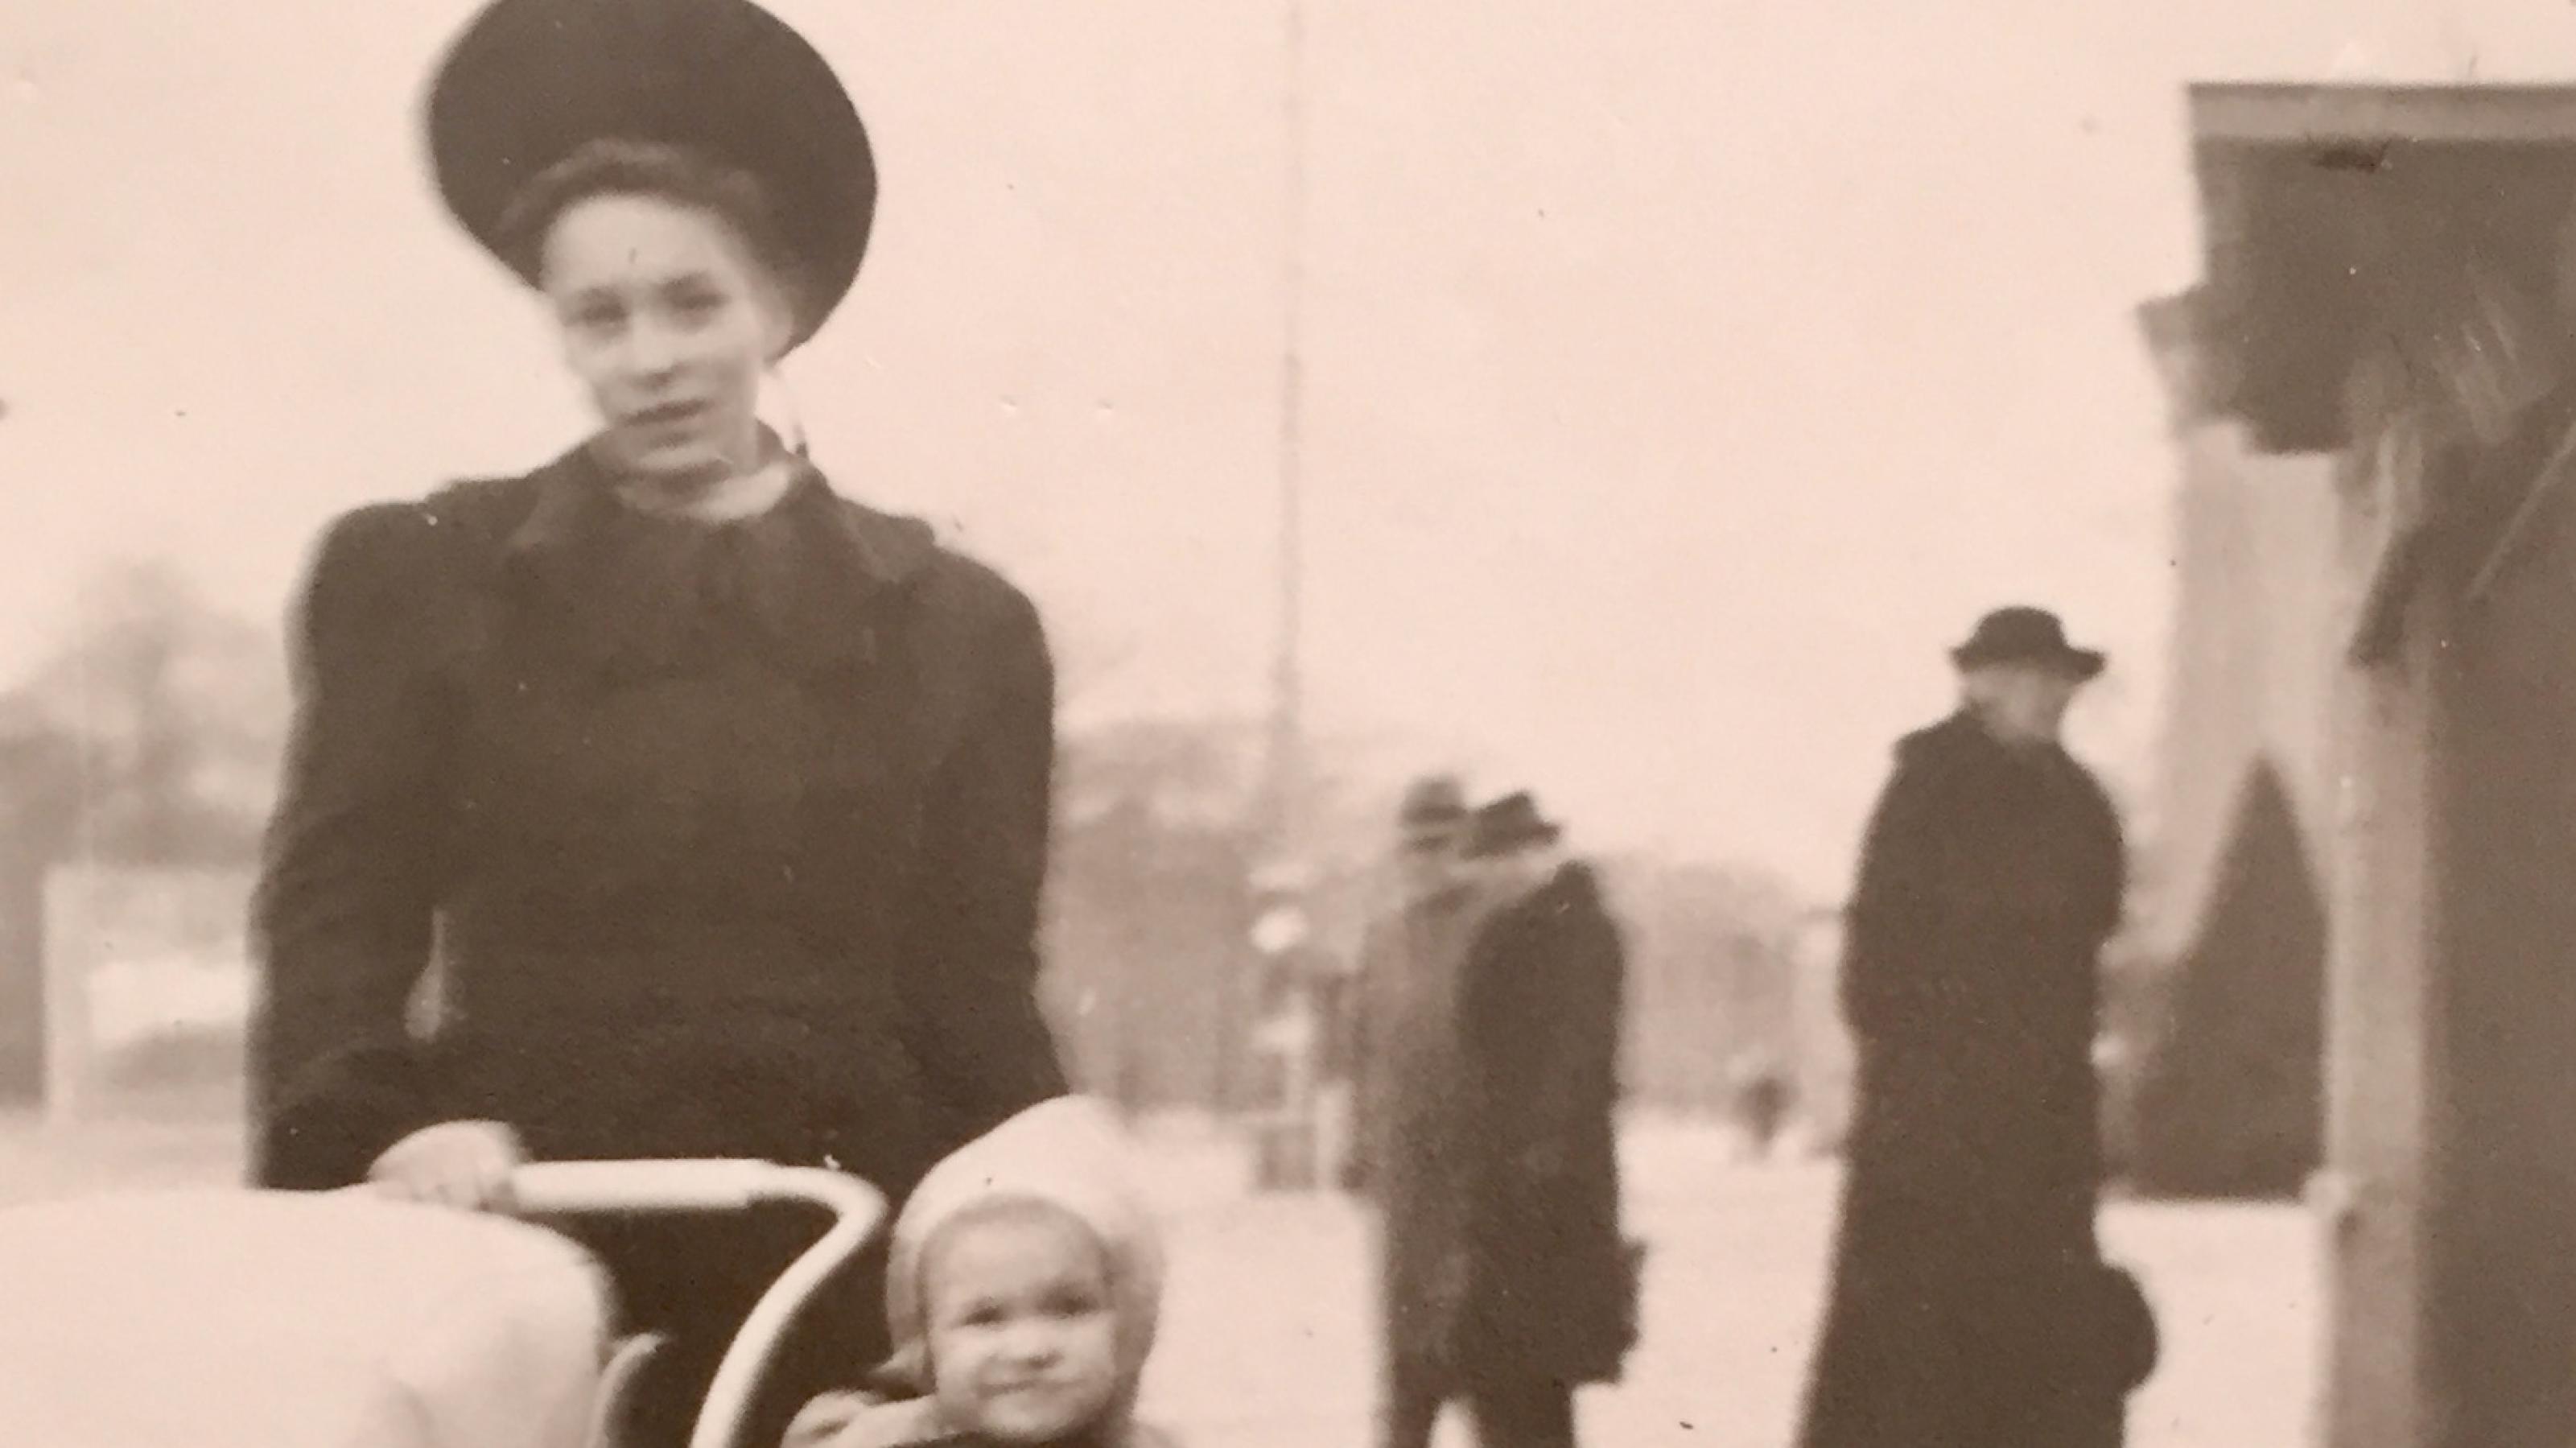 ein schwarz-weiss Foto von Angela, ihrer Mutter und kleinen Schwester 1945, Strassenszene in Dresden vor der Bombardierung, eine Frau mit Hut schiebt einen Kinderwagen, neben ihr ein kleines Kind mit weißer Wollmütze. Frau und Kind lächeln in die Kamera.